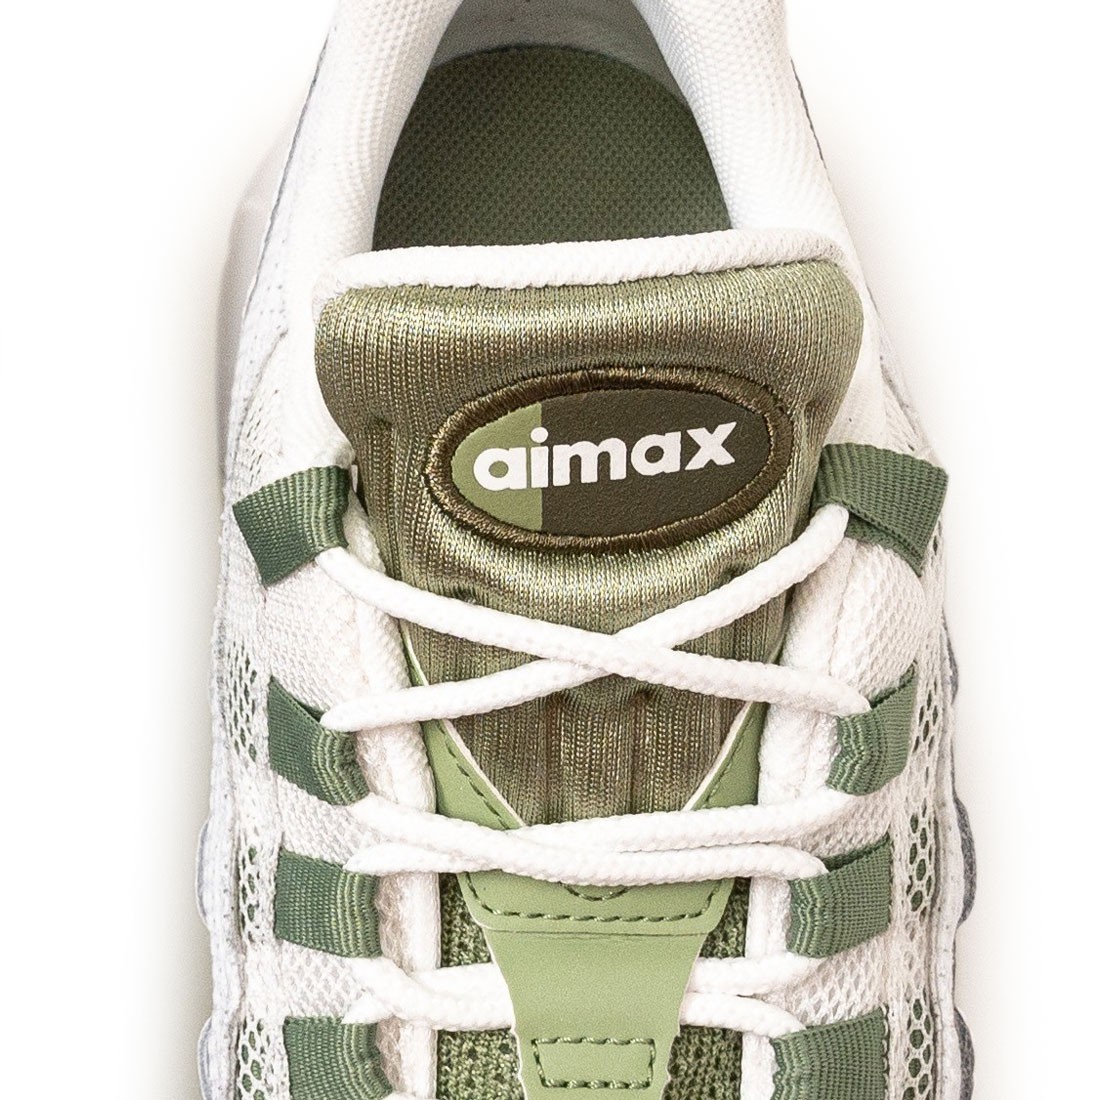 Nike Air Max 95 White Oil Green